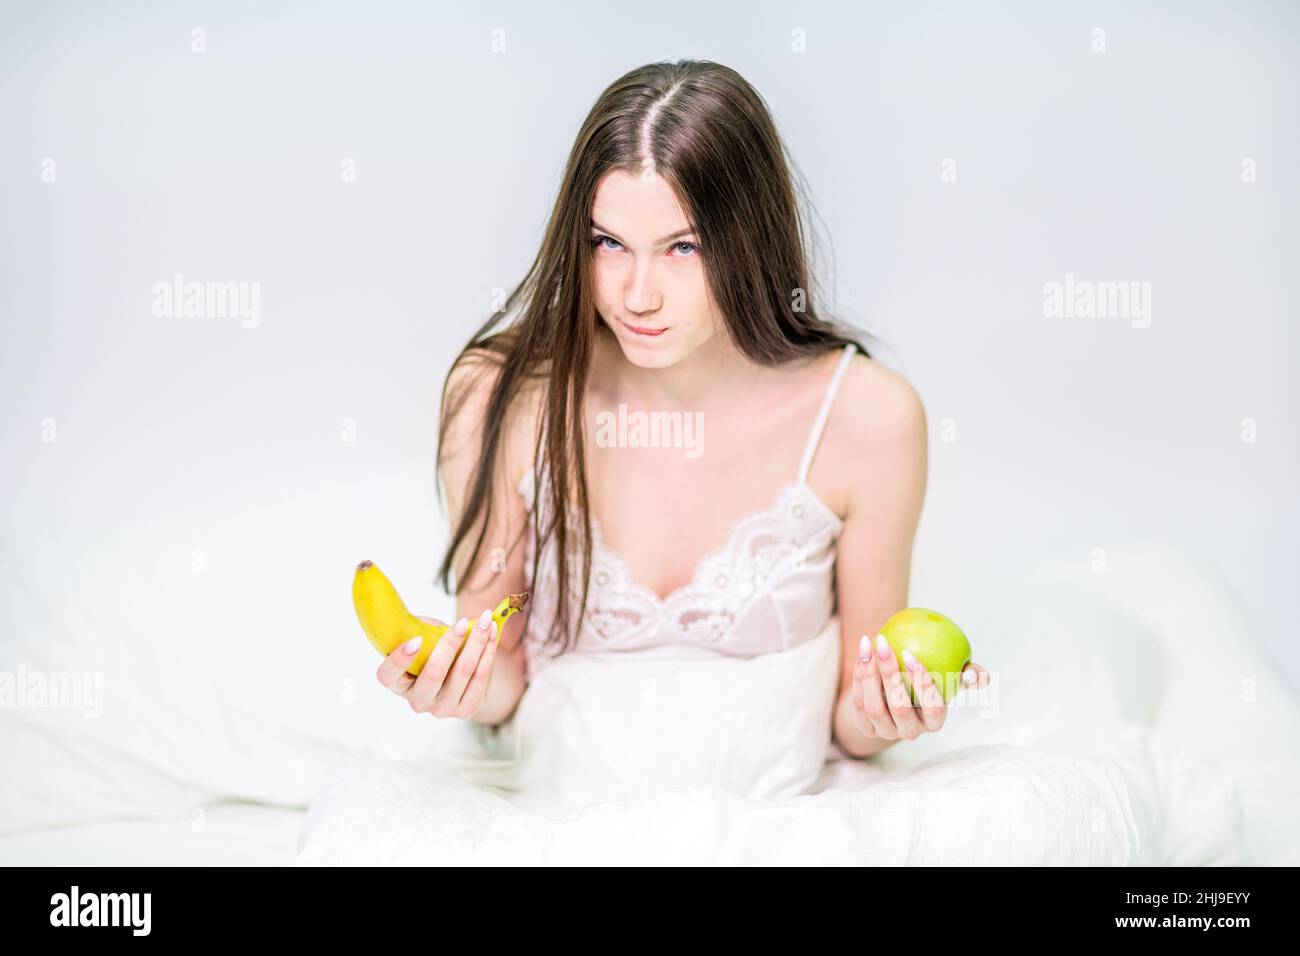 Das Mädchen sitzt auf dem Bett, in eine Decke gehüllt, hält eine Banane und einen Apfel, wählt, was zu essen ist. Die Brünette frühstückte mit Obst. Stockfoto